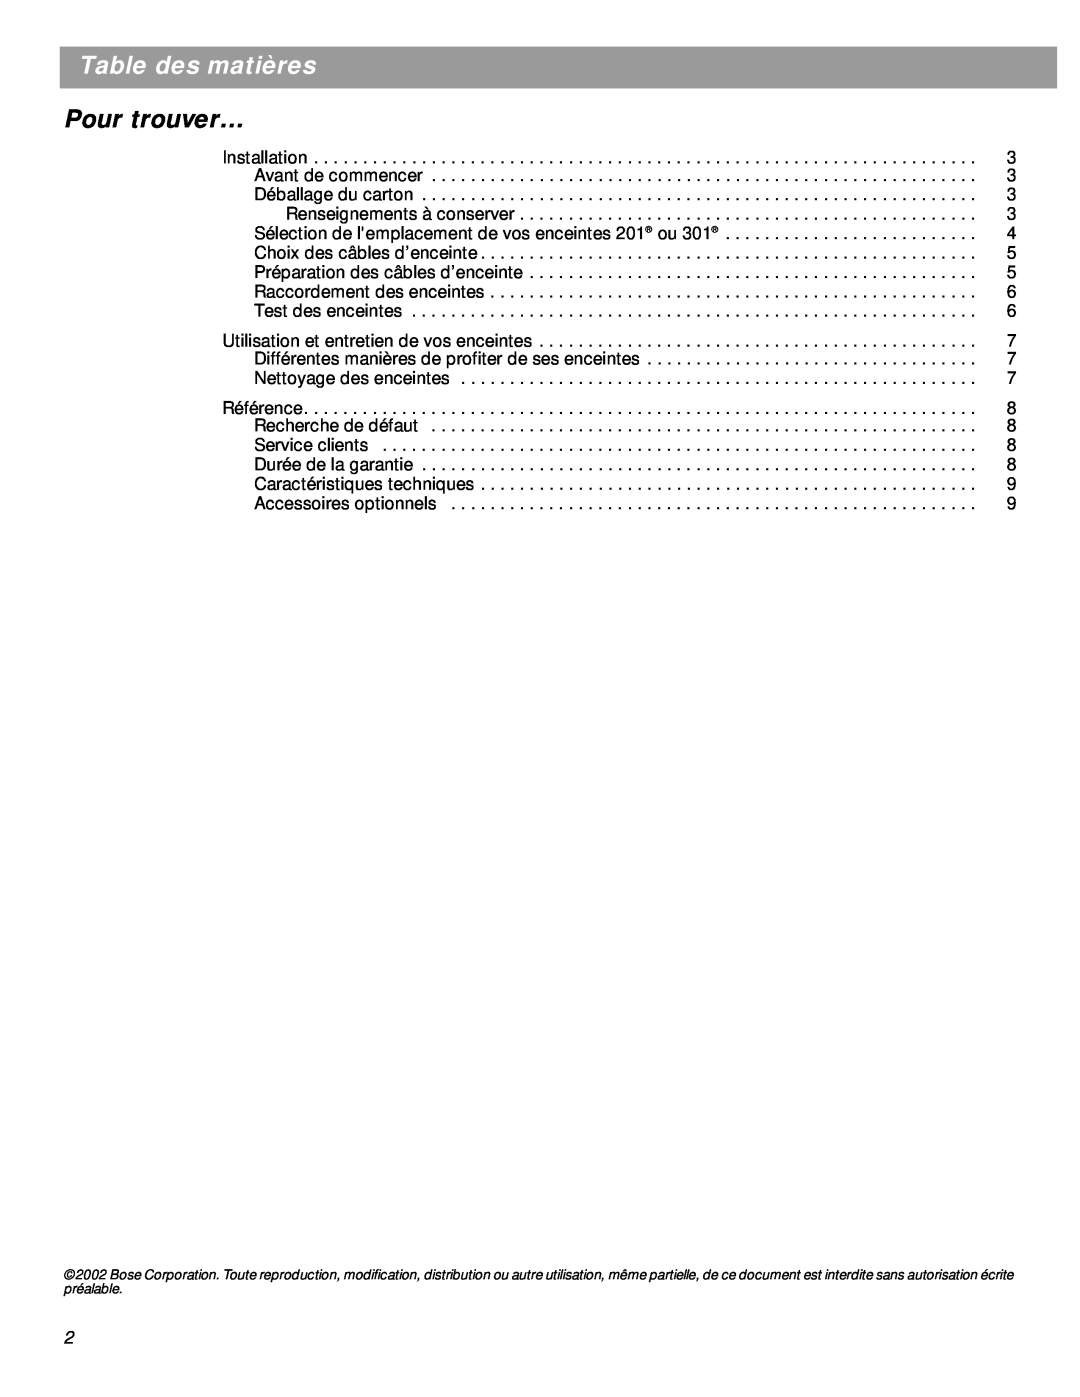 Boss Audio Systems 301 Black (Pr.), Series V, 301 Cherry (Pr.), 201 Black (Pr.) manual Table des matières, Pour trouver… 